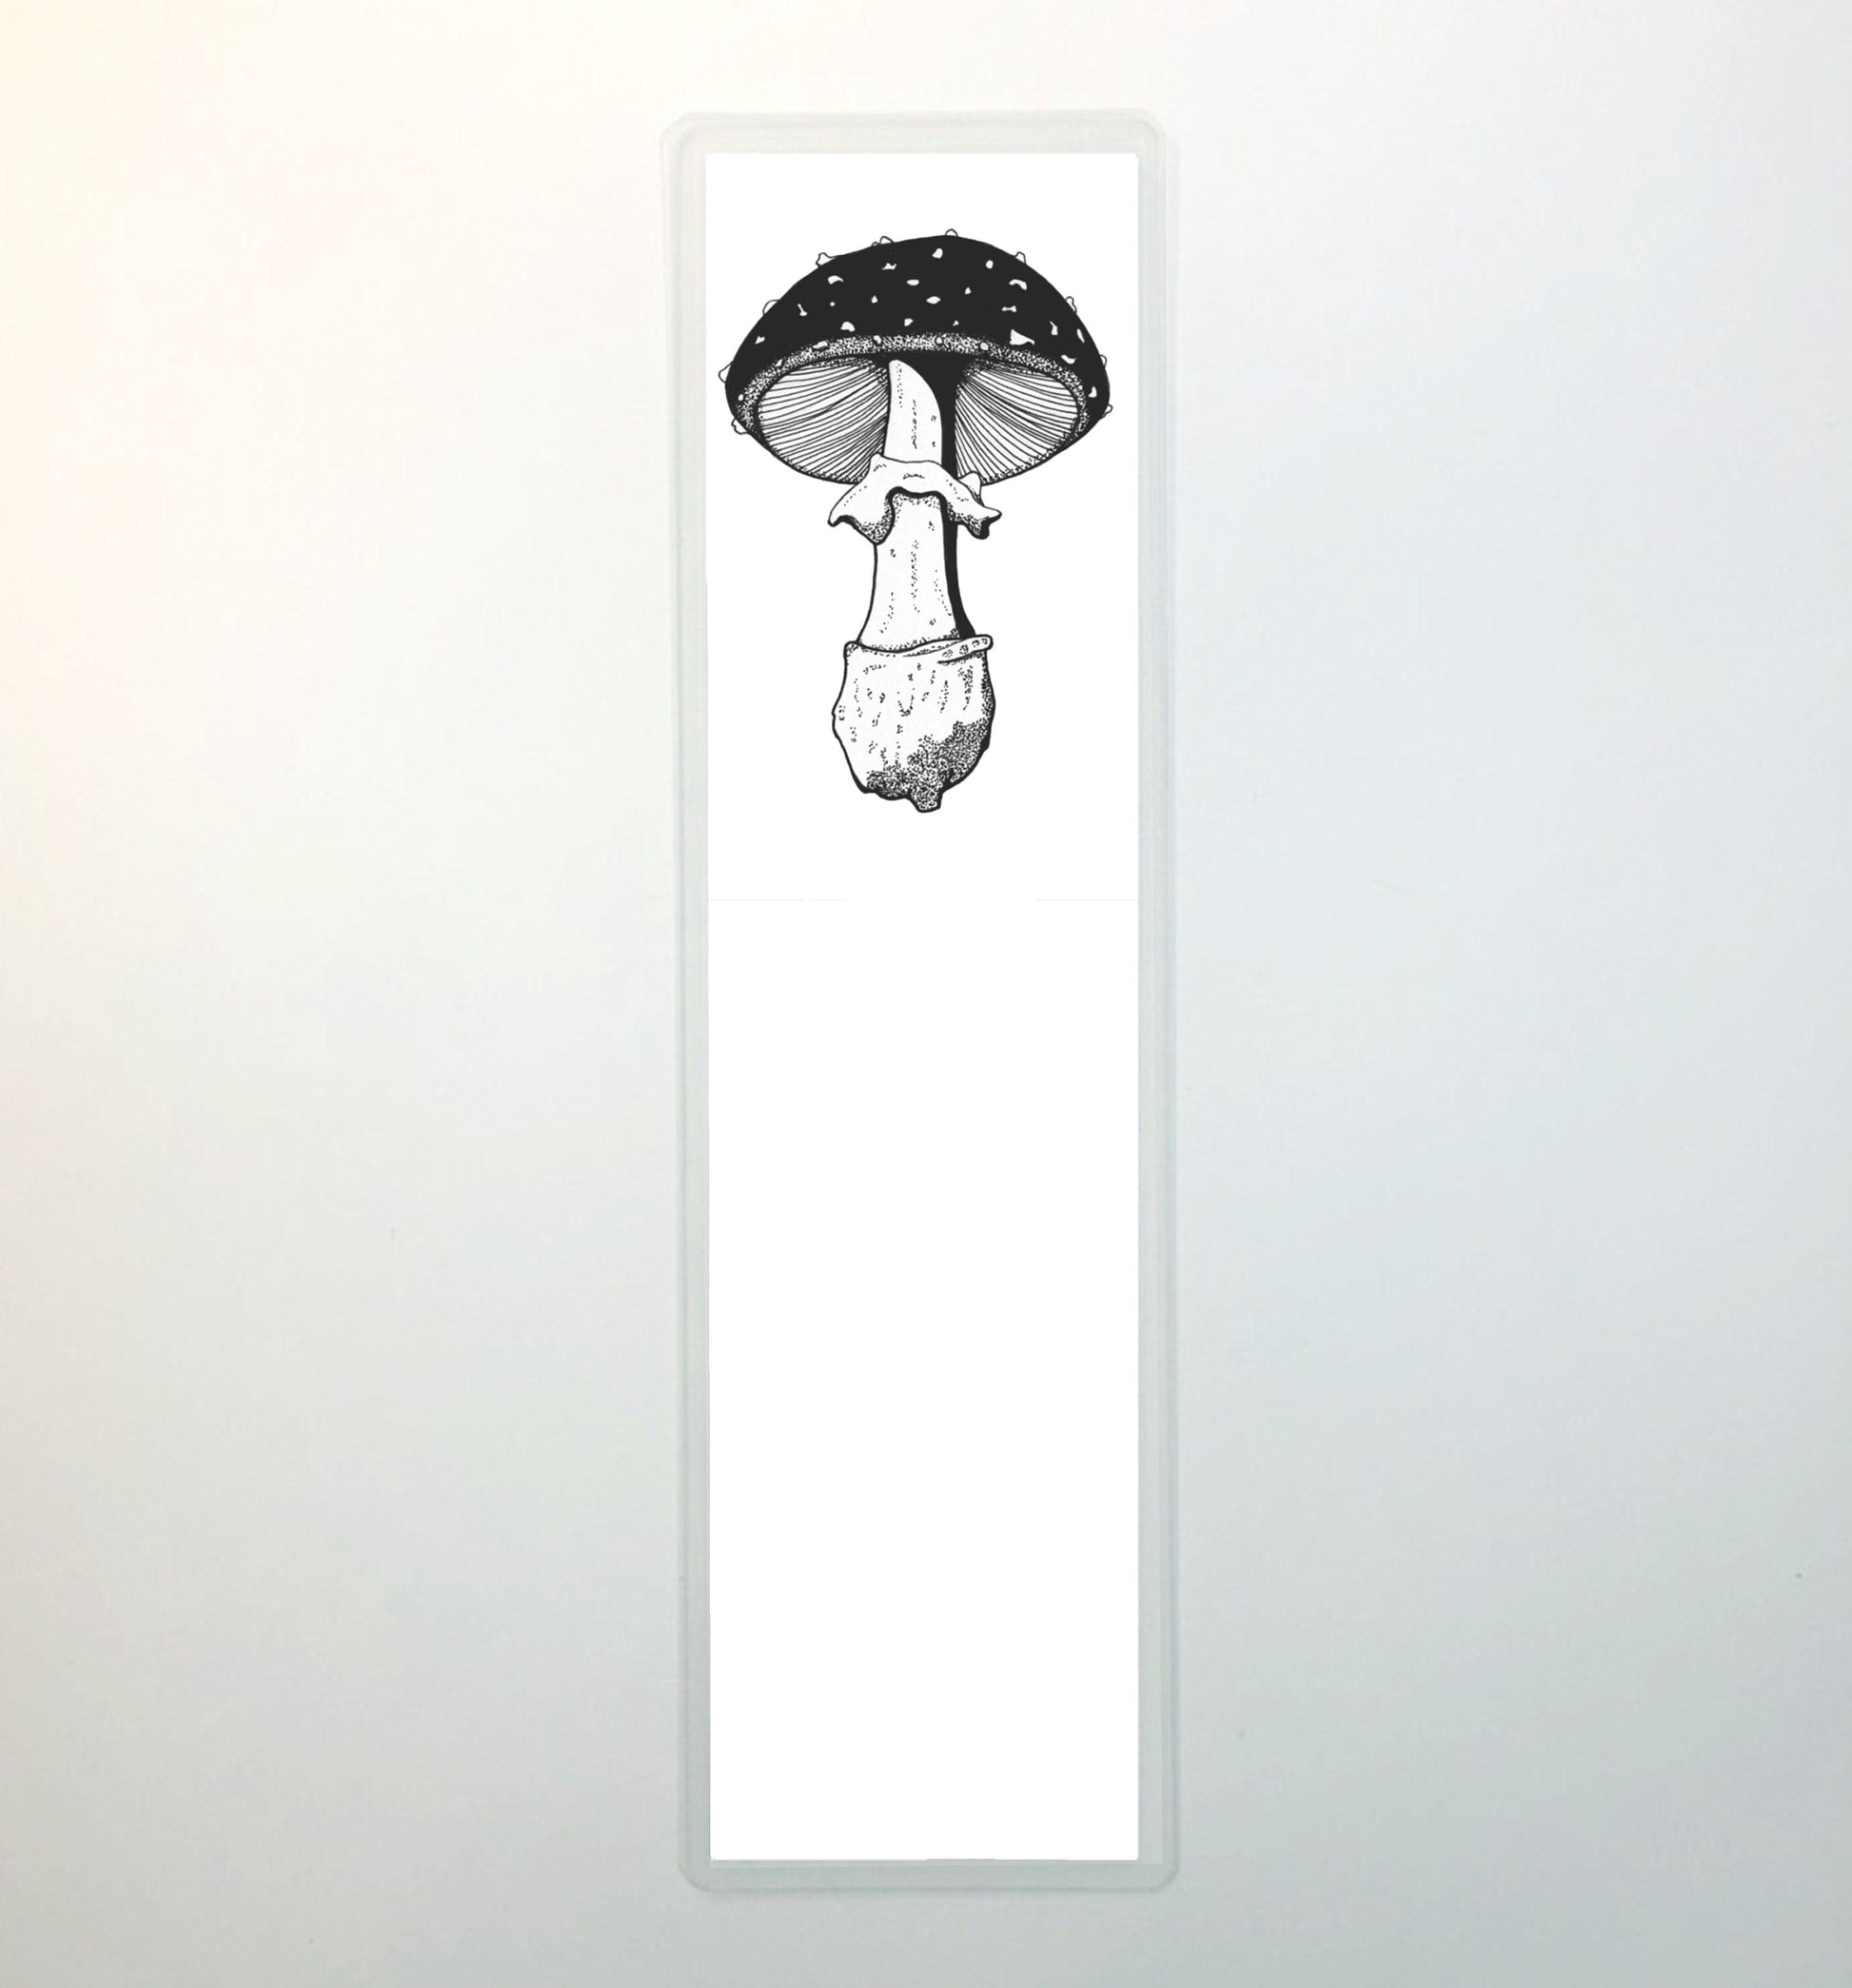 Mushroom Printable Bookmark, Printable mushroom bookmarks